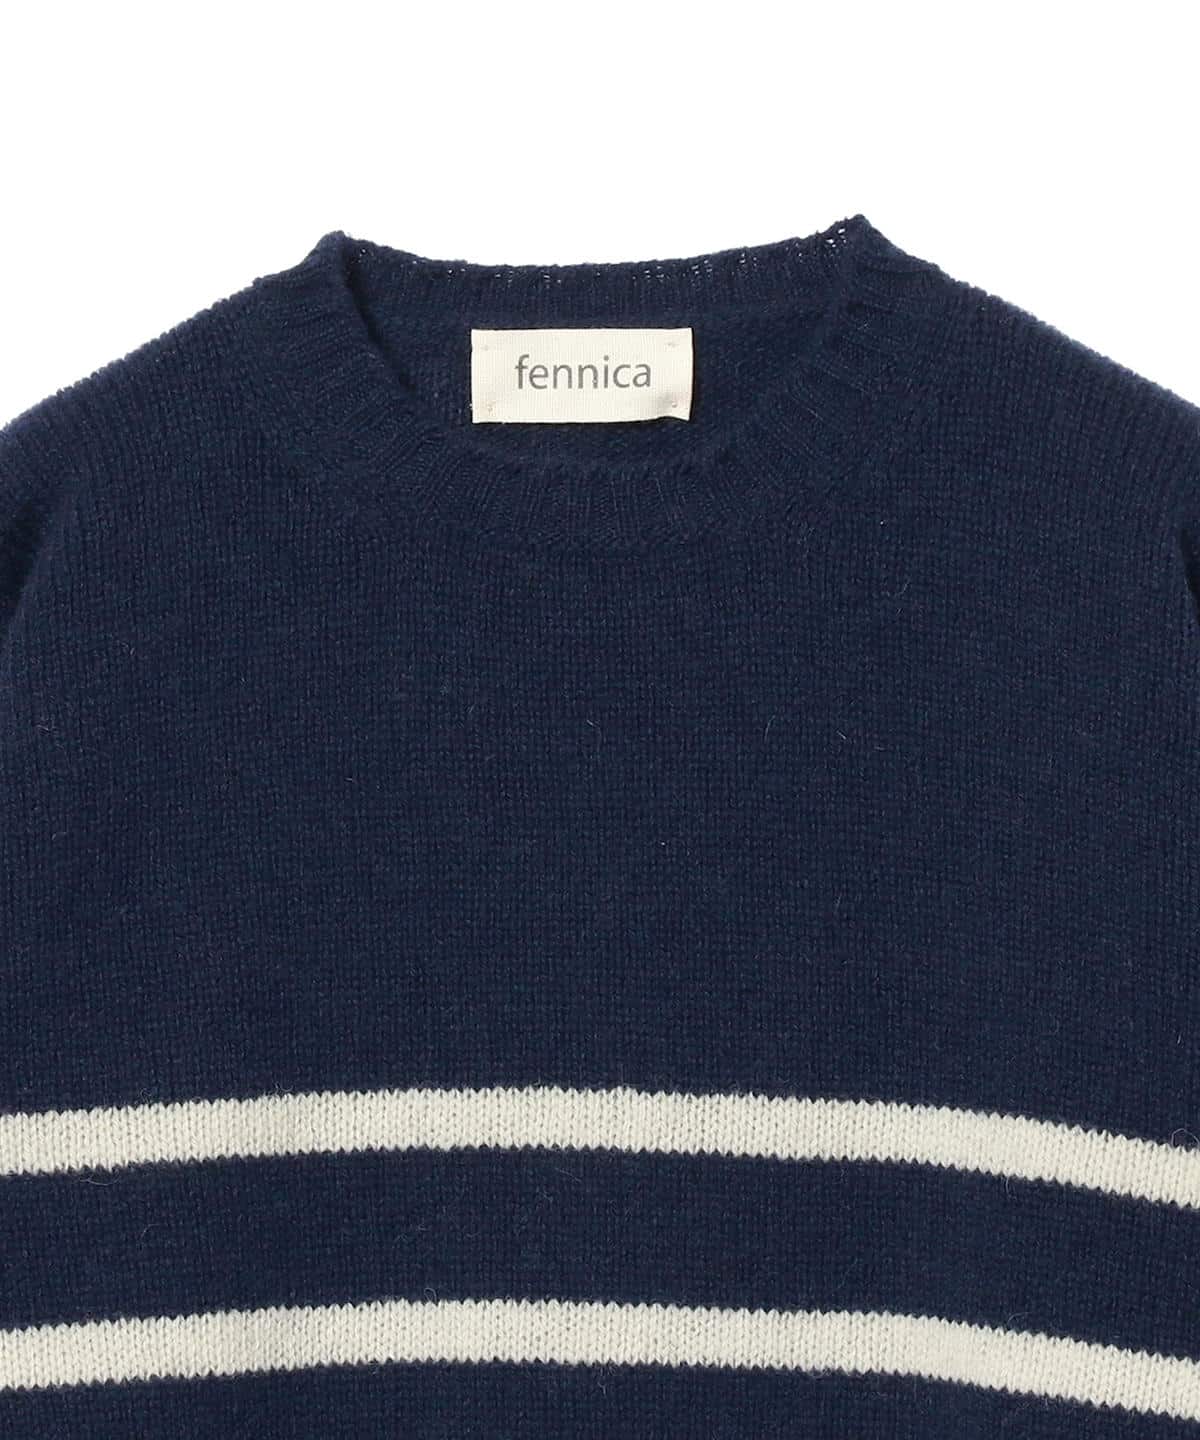 fennica（フェニカ）〈UNISEX〉Jamieson's Knitwear × fennica / 別注